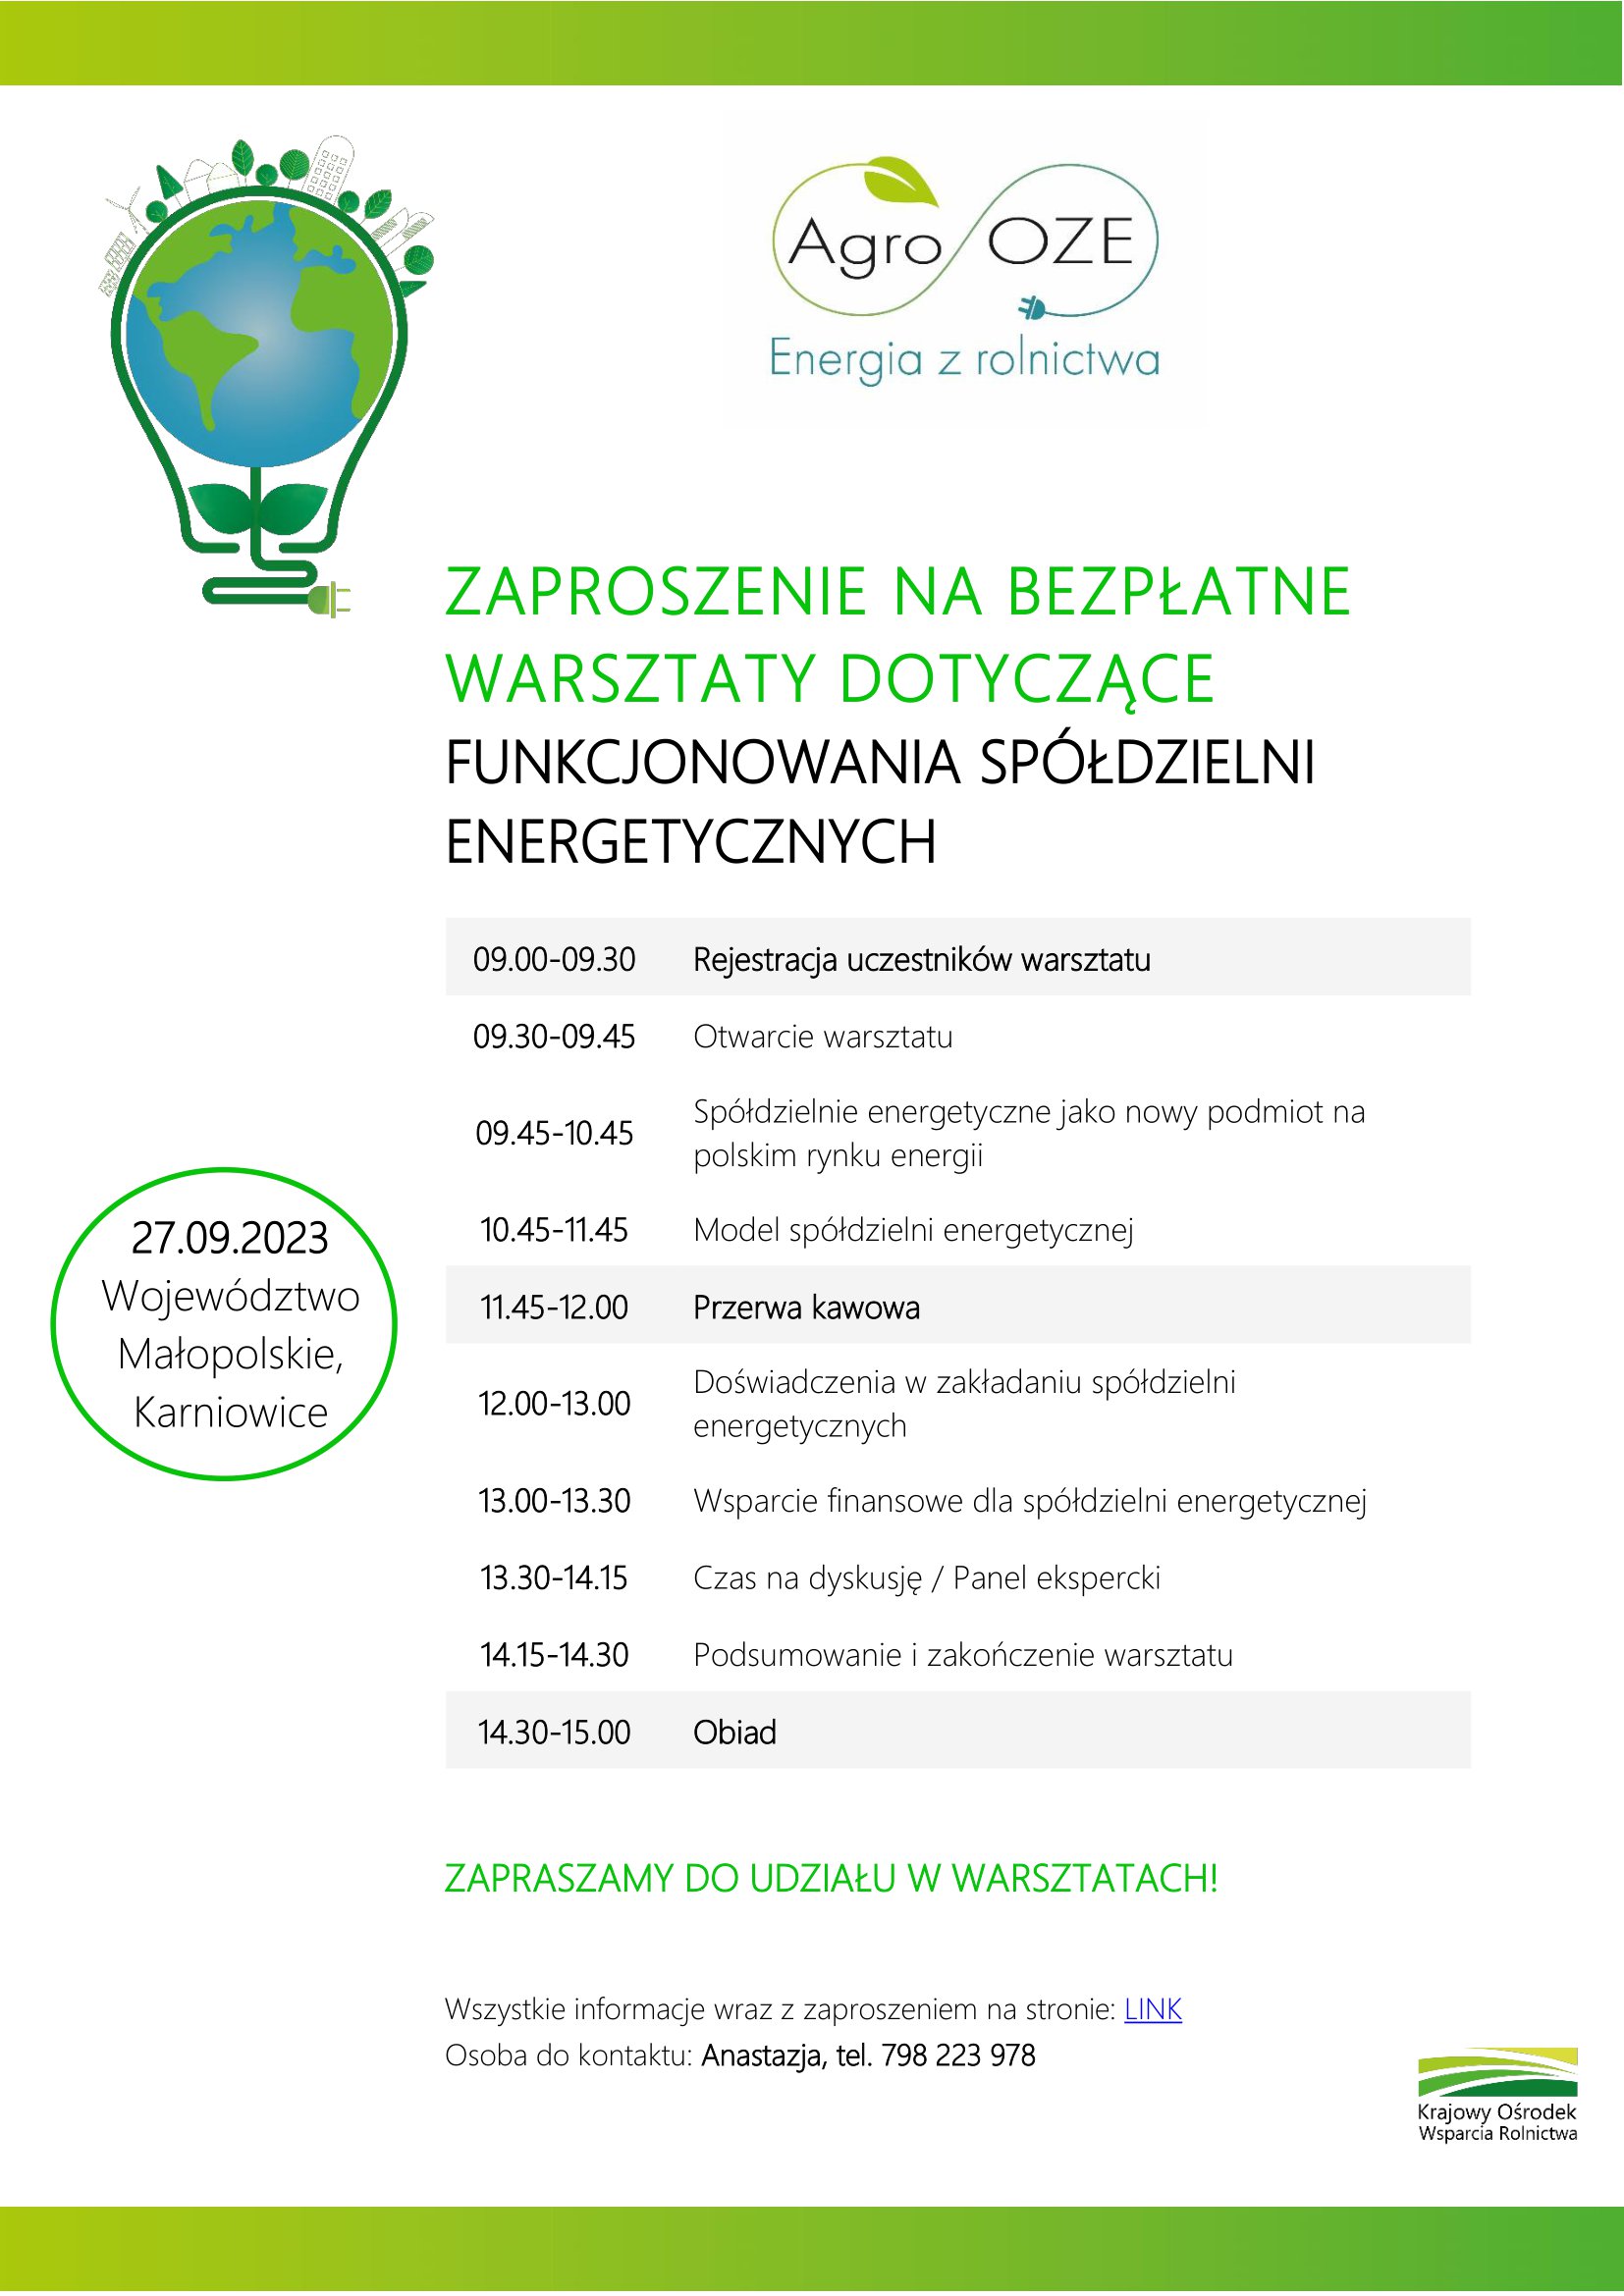 Zaproszenie KOWR Spldzielnie energetyczne MODR pdf